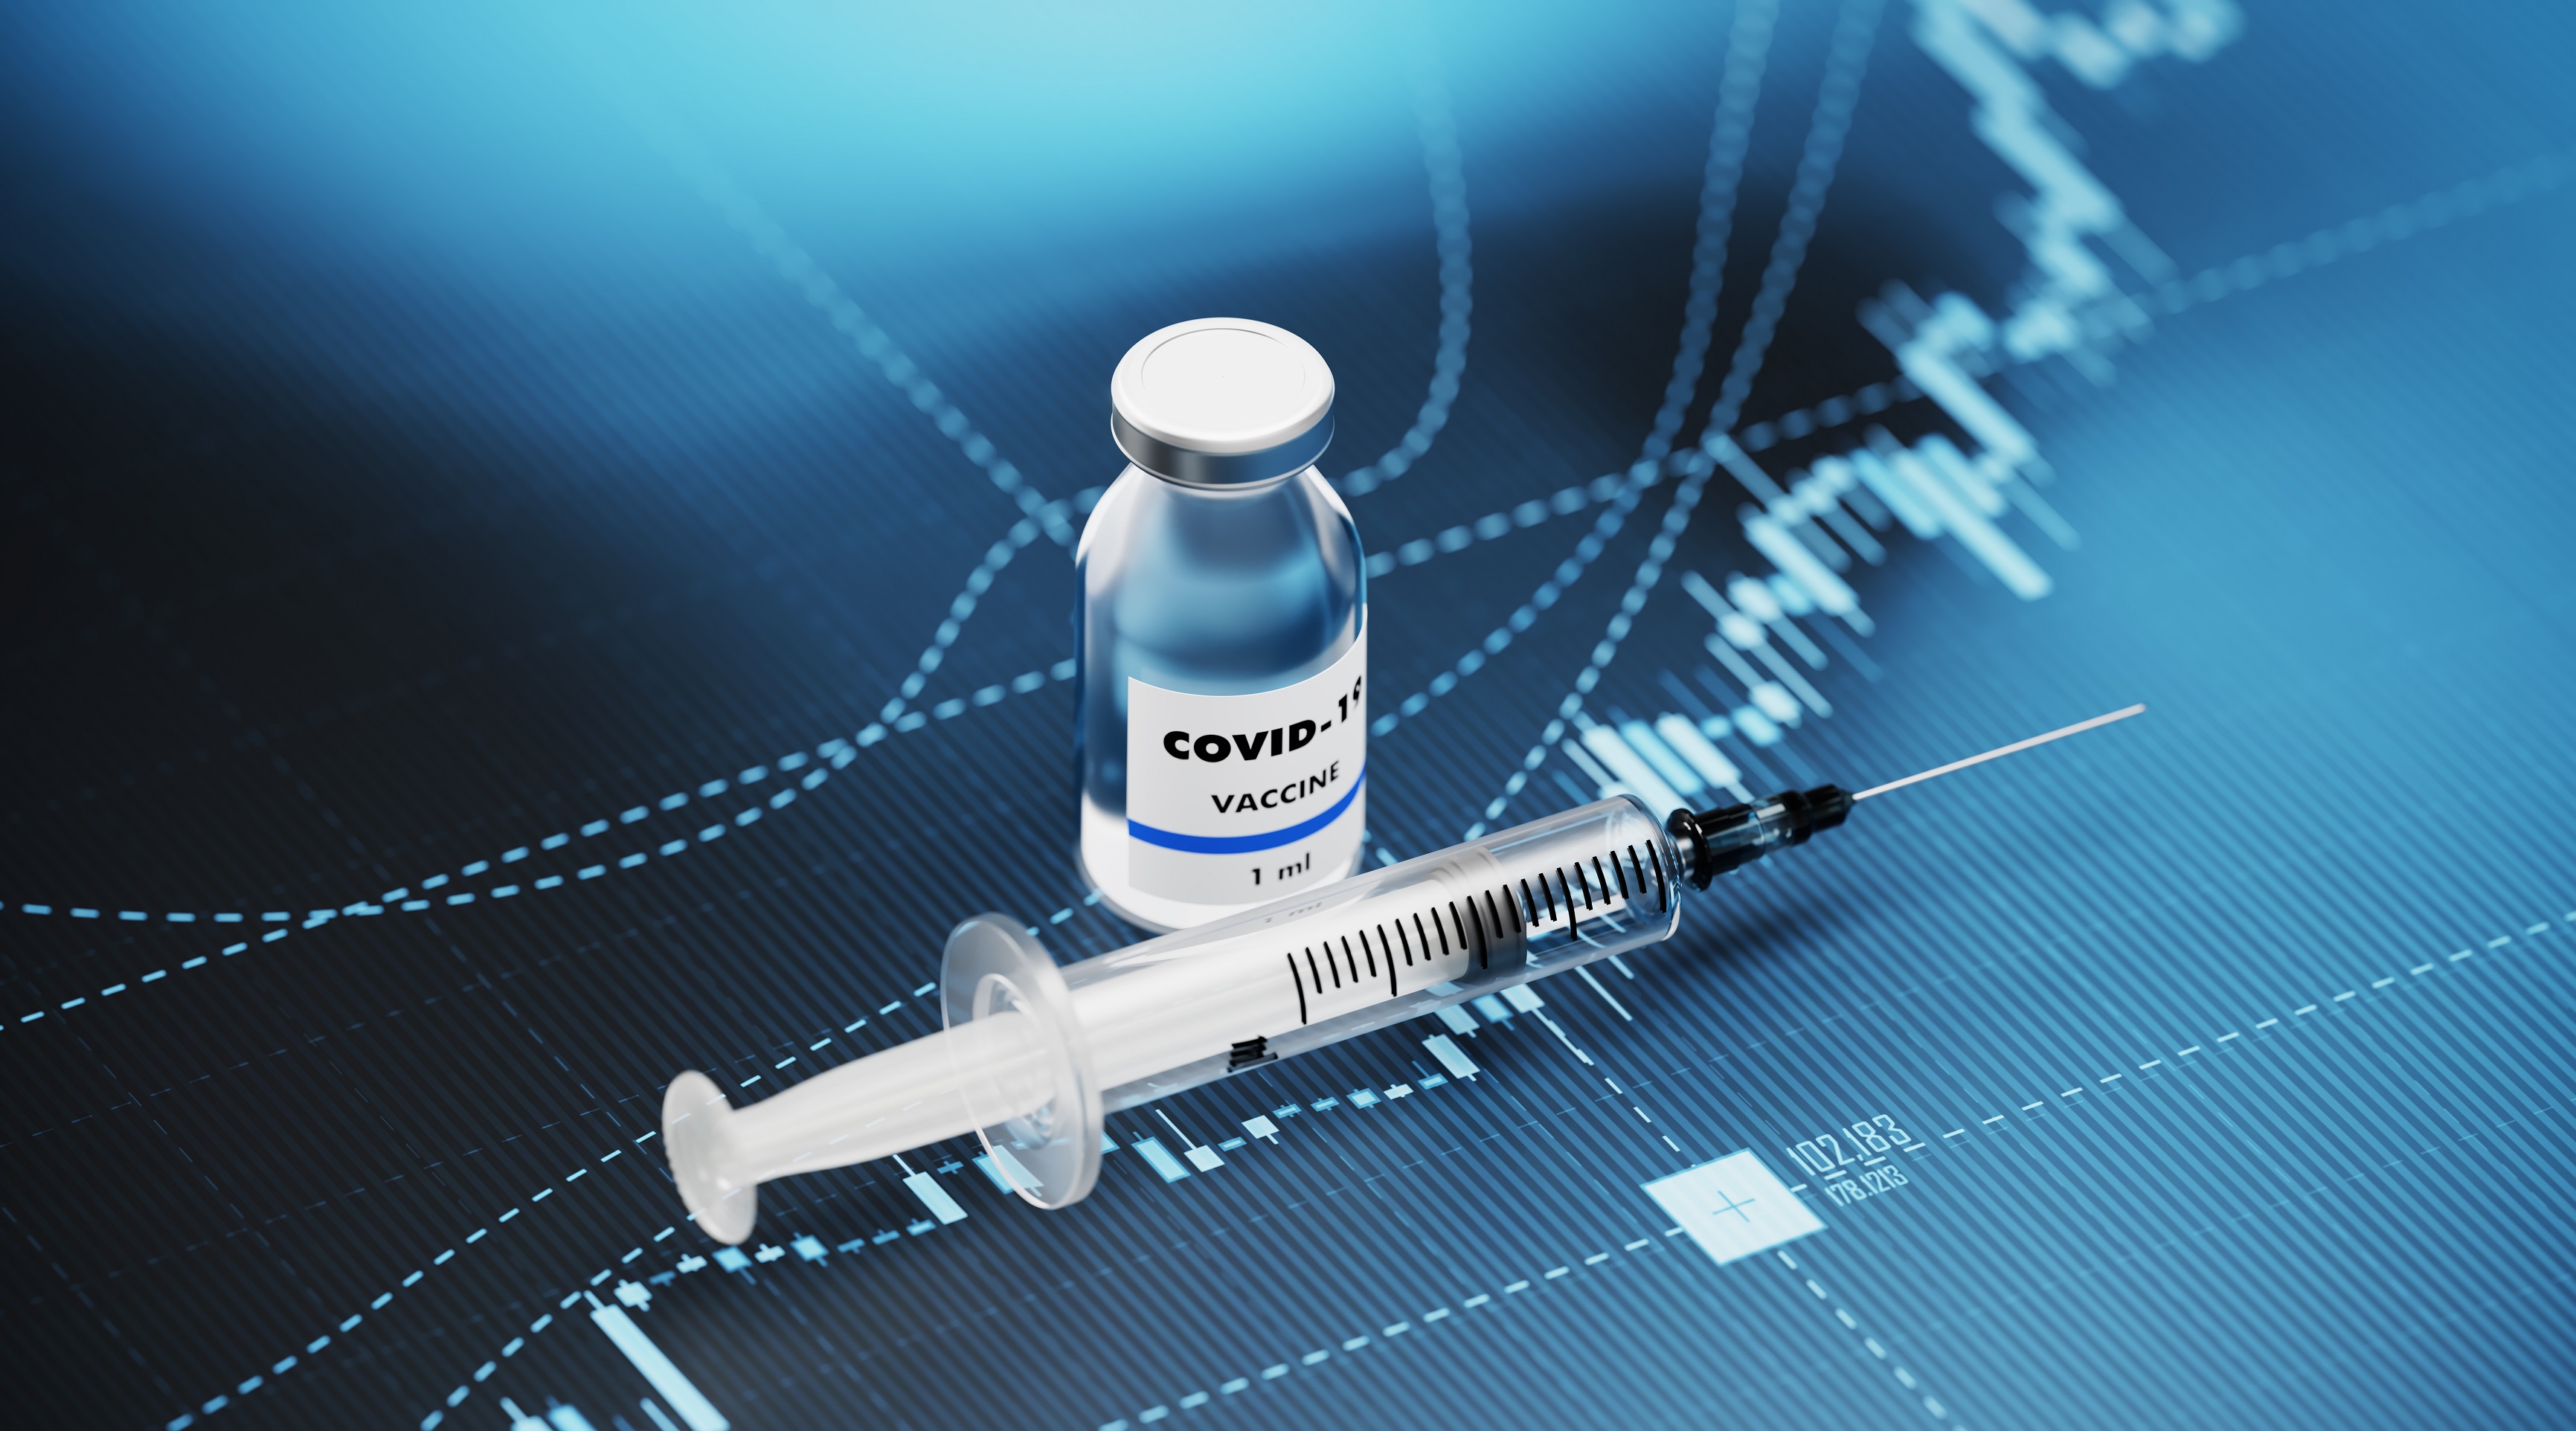 La troisième dose de vaccin anti-Covid permet de renforcer la protection contre les formes graves de la maladie. © MicroStockHub, Getty Images